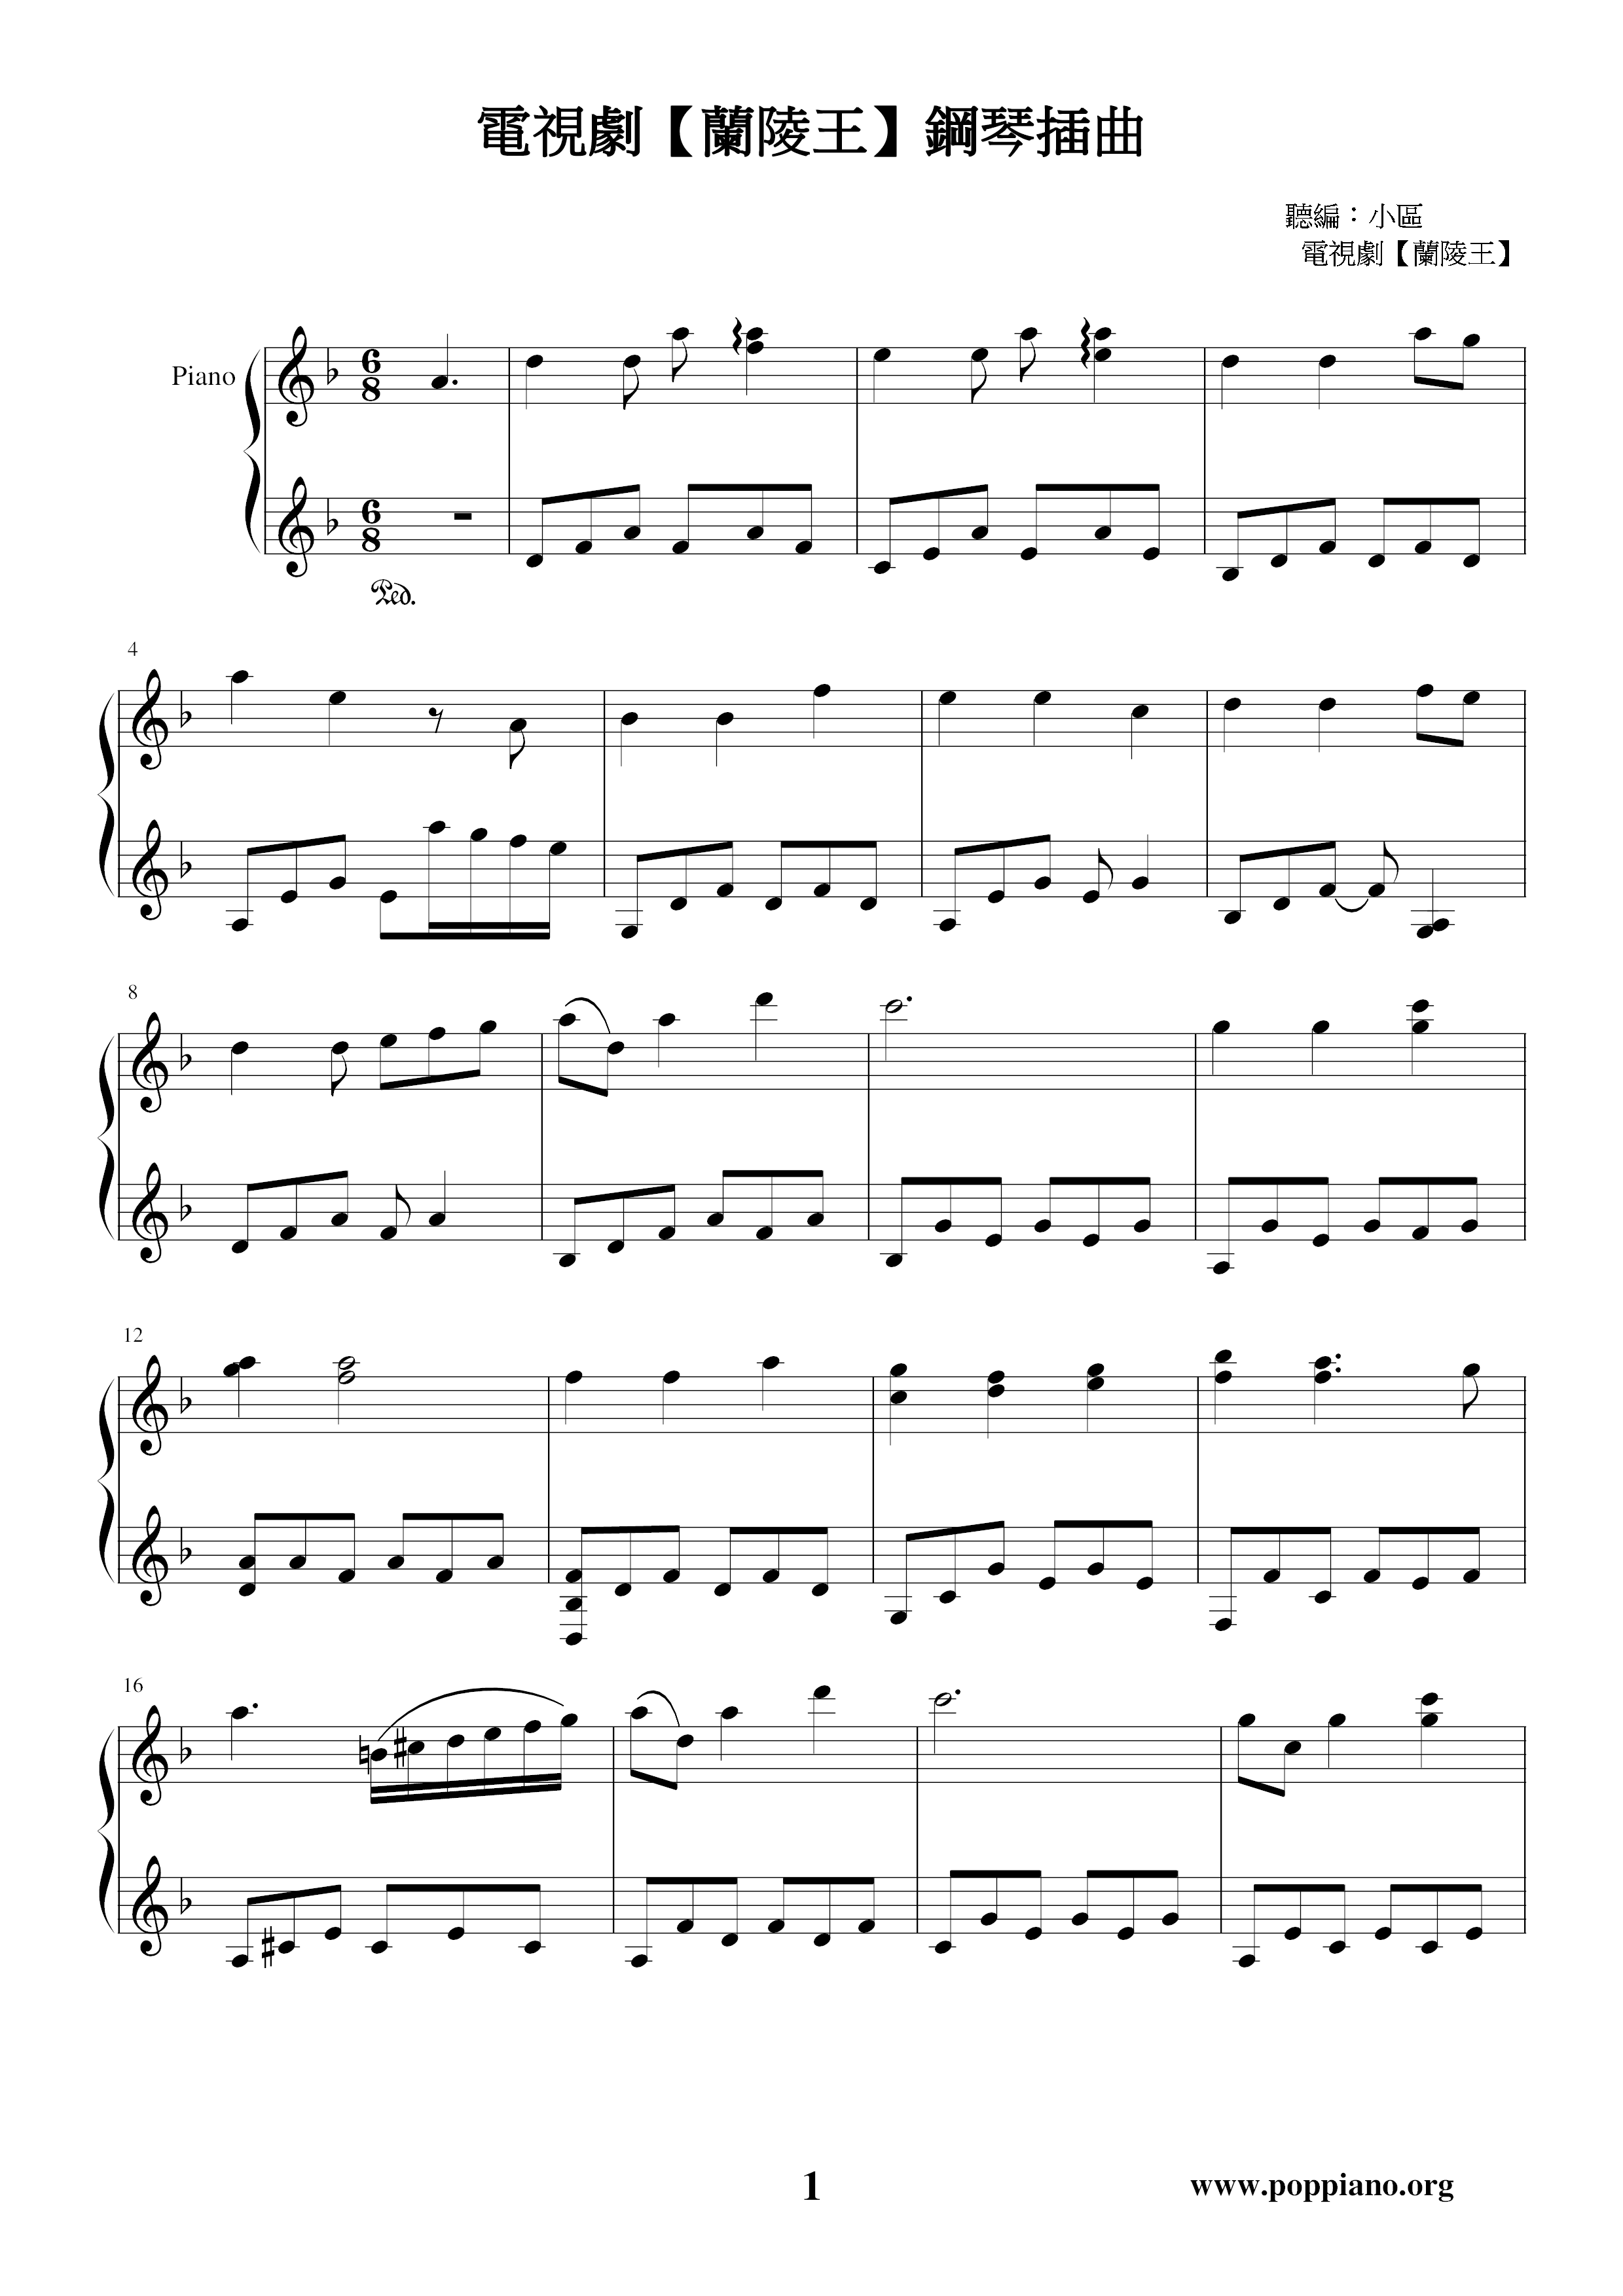 Lanling Wang-Piano Episode 2 Score